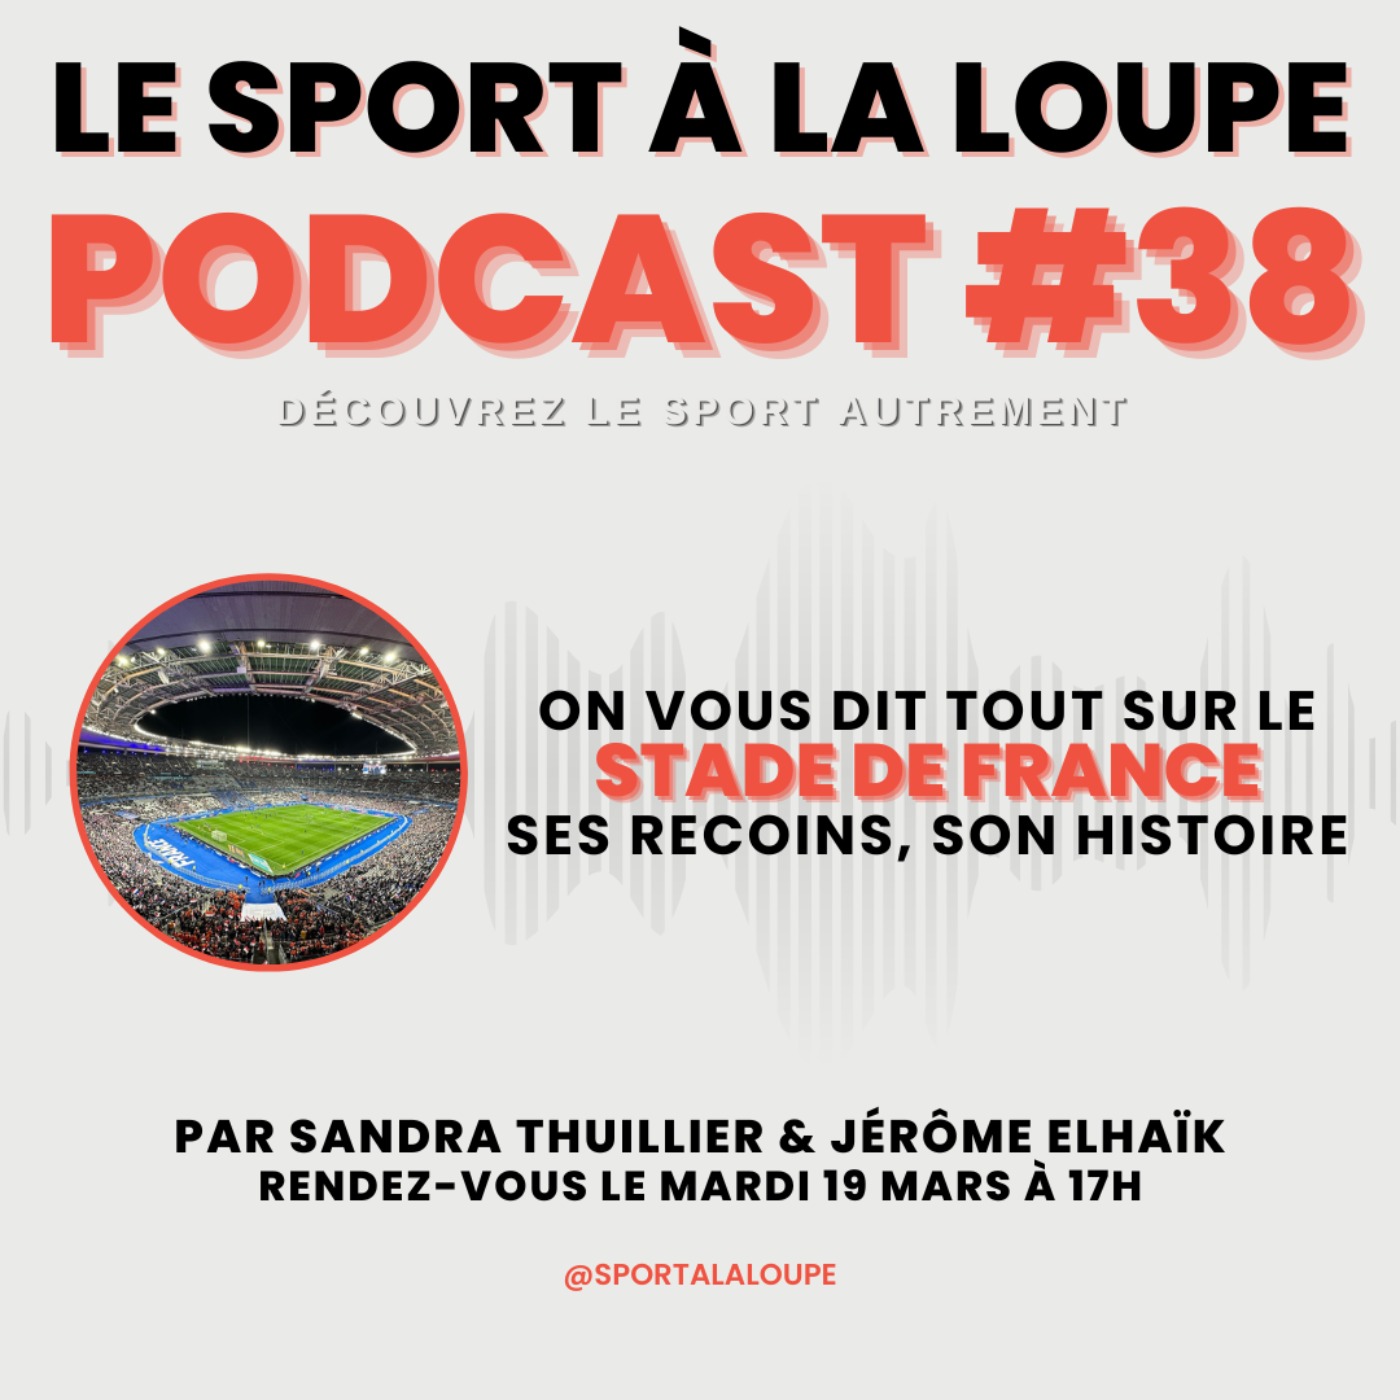 [TEASER] - On vous dit tout sur le Stade de France 🏟️, ses recoins, son histoire !